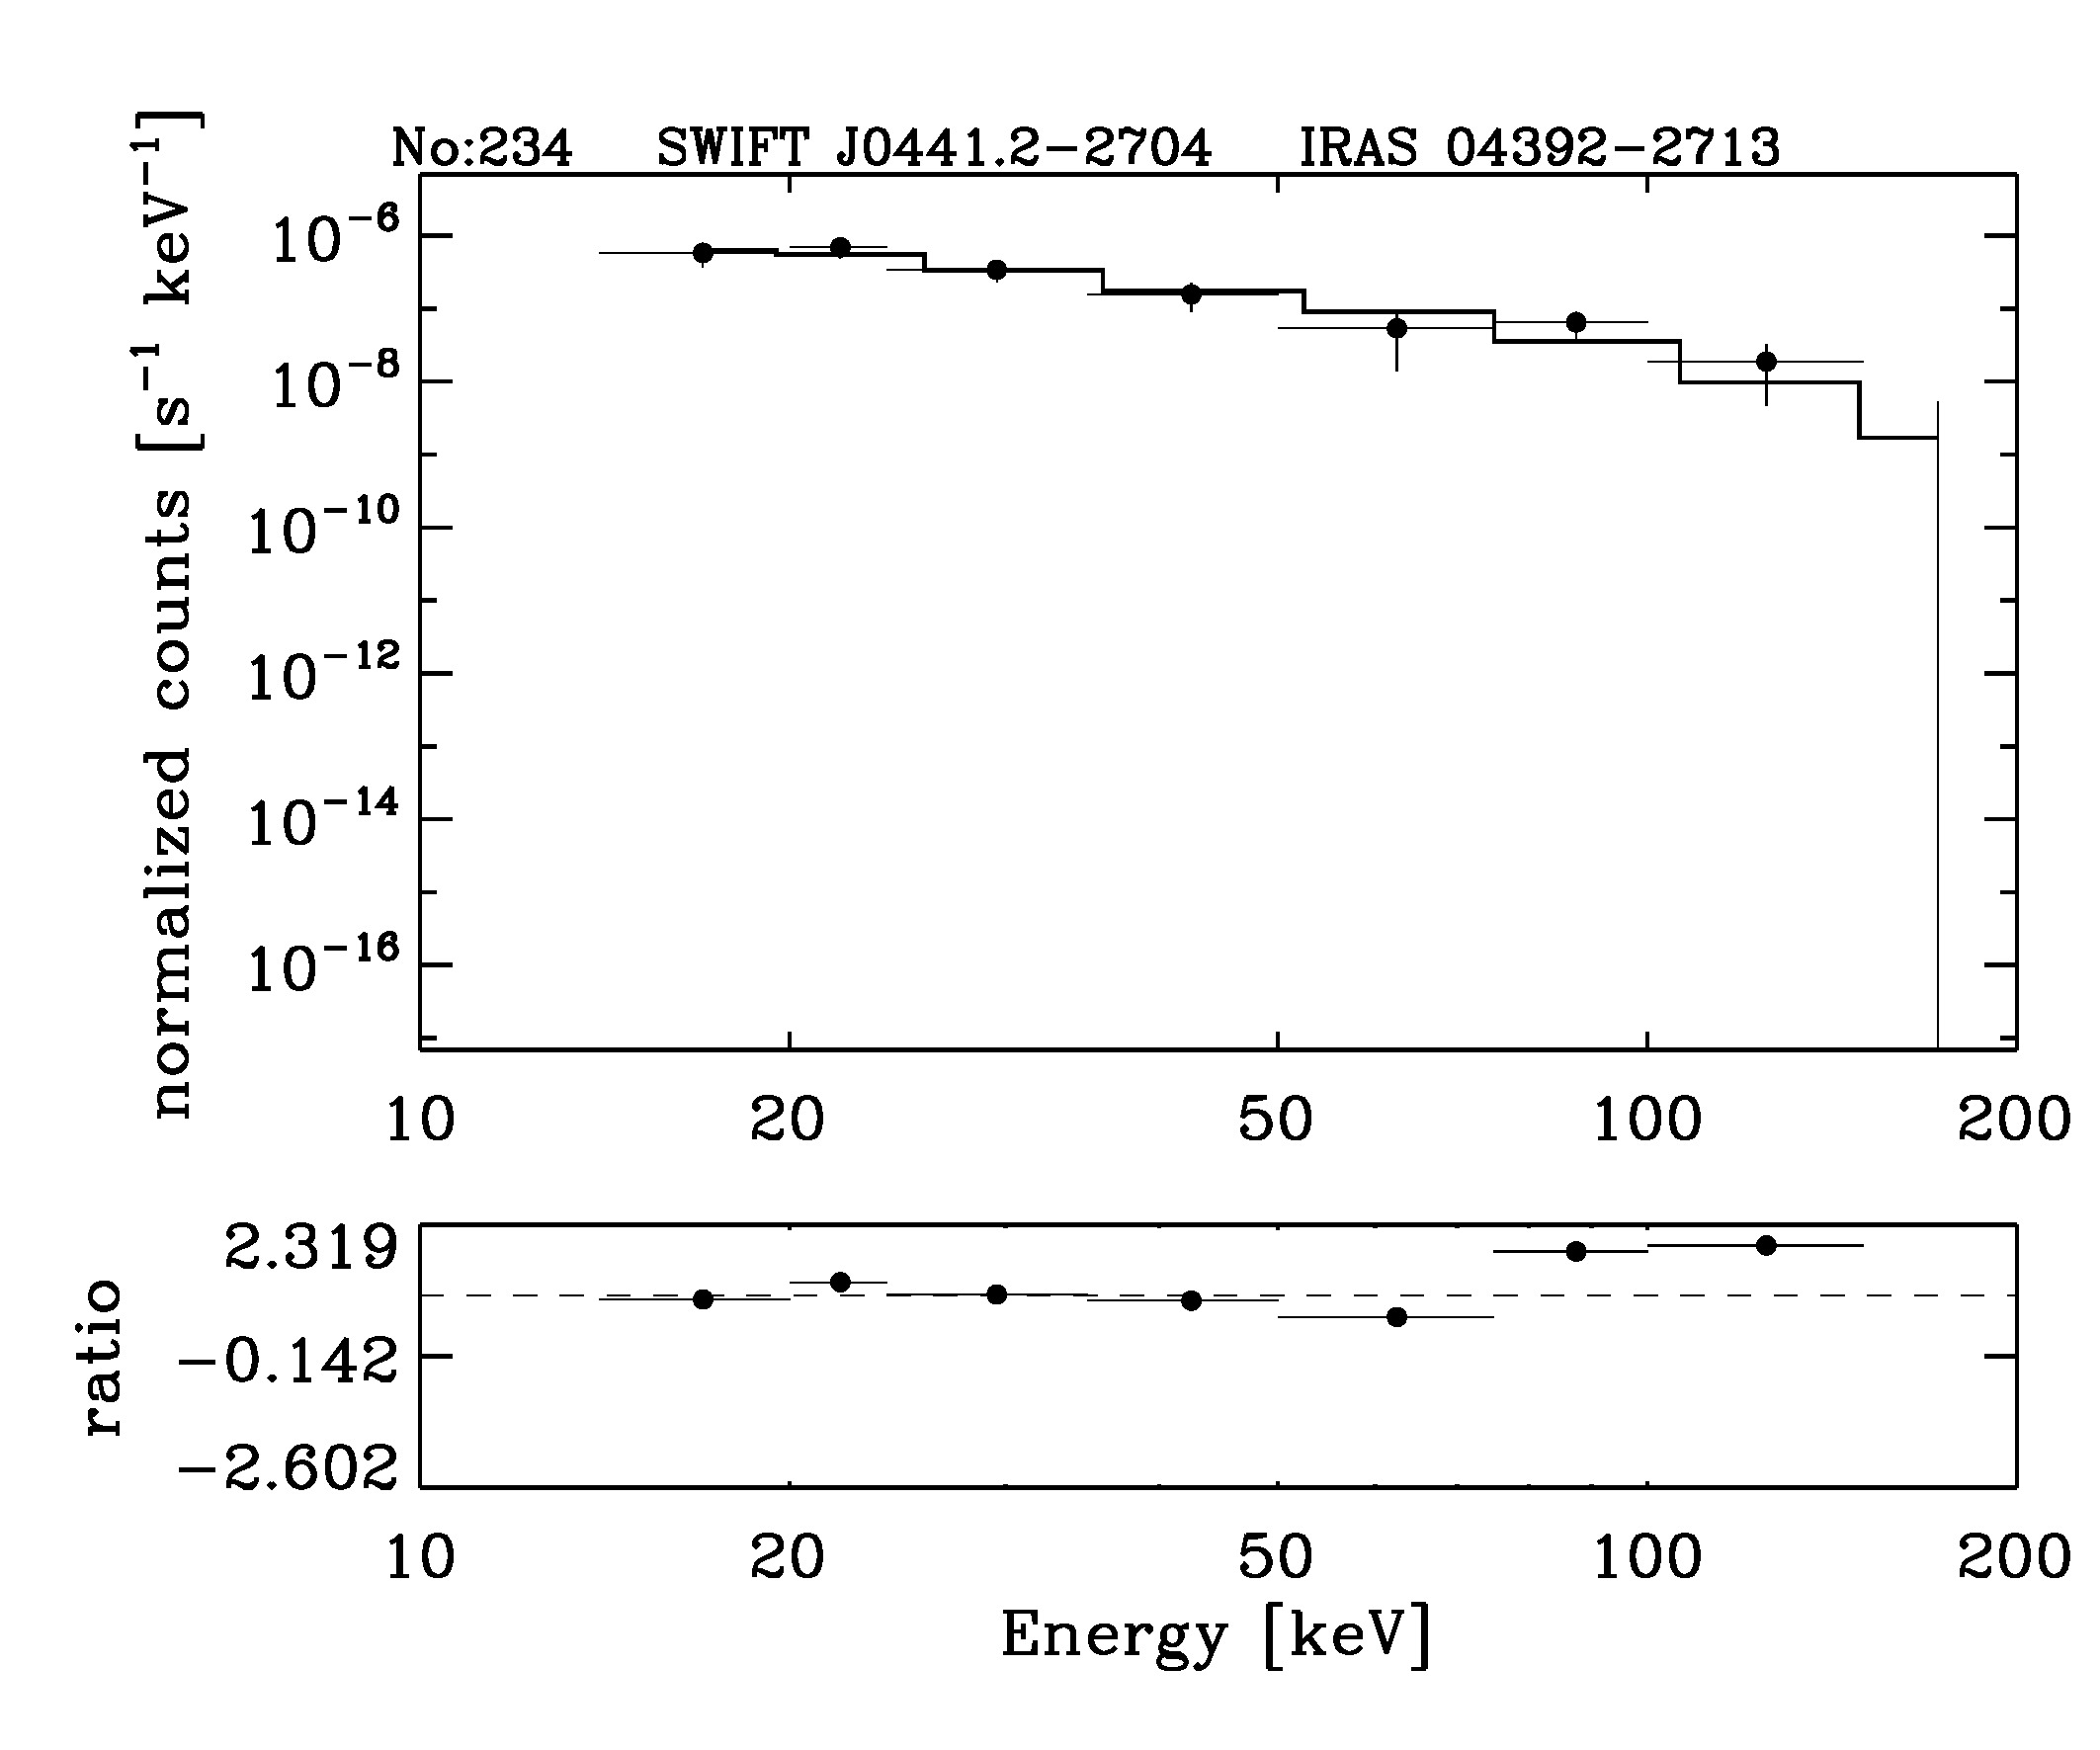 BAT Spectrum for SWIFT J0441.2-2704